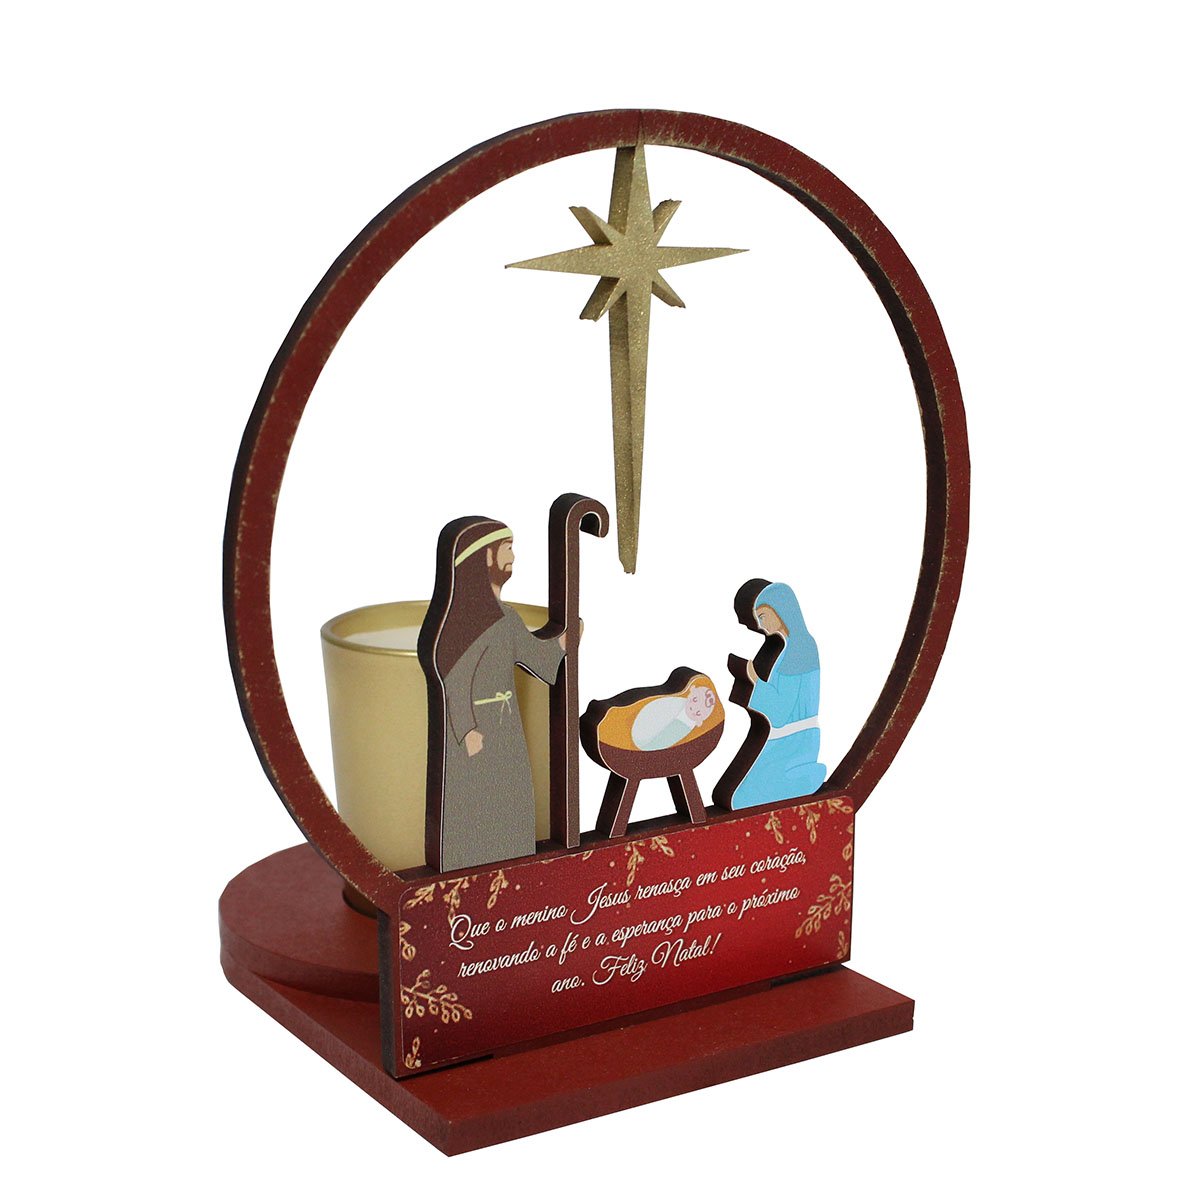 Natal Sagrada Família MDF Vela Vidro Dourado - 16 cm x 15 cm